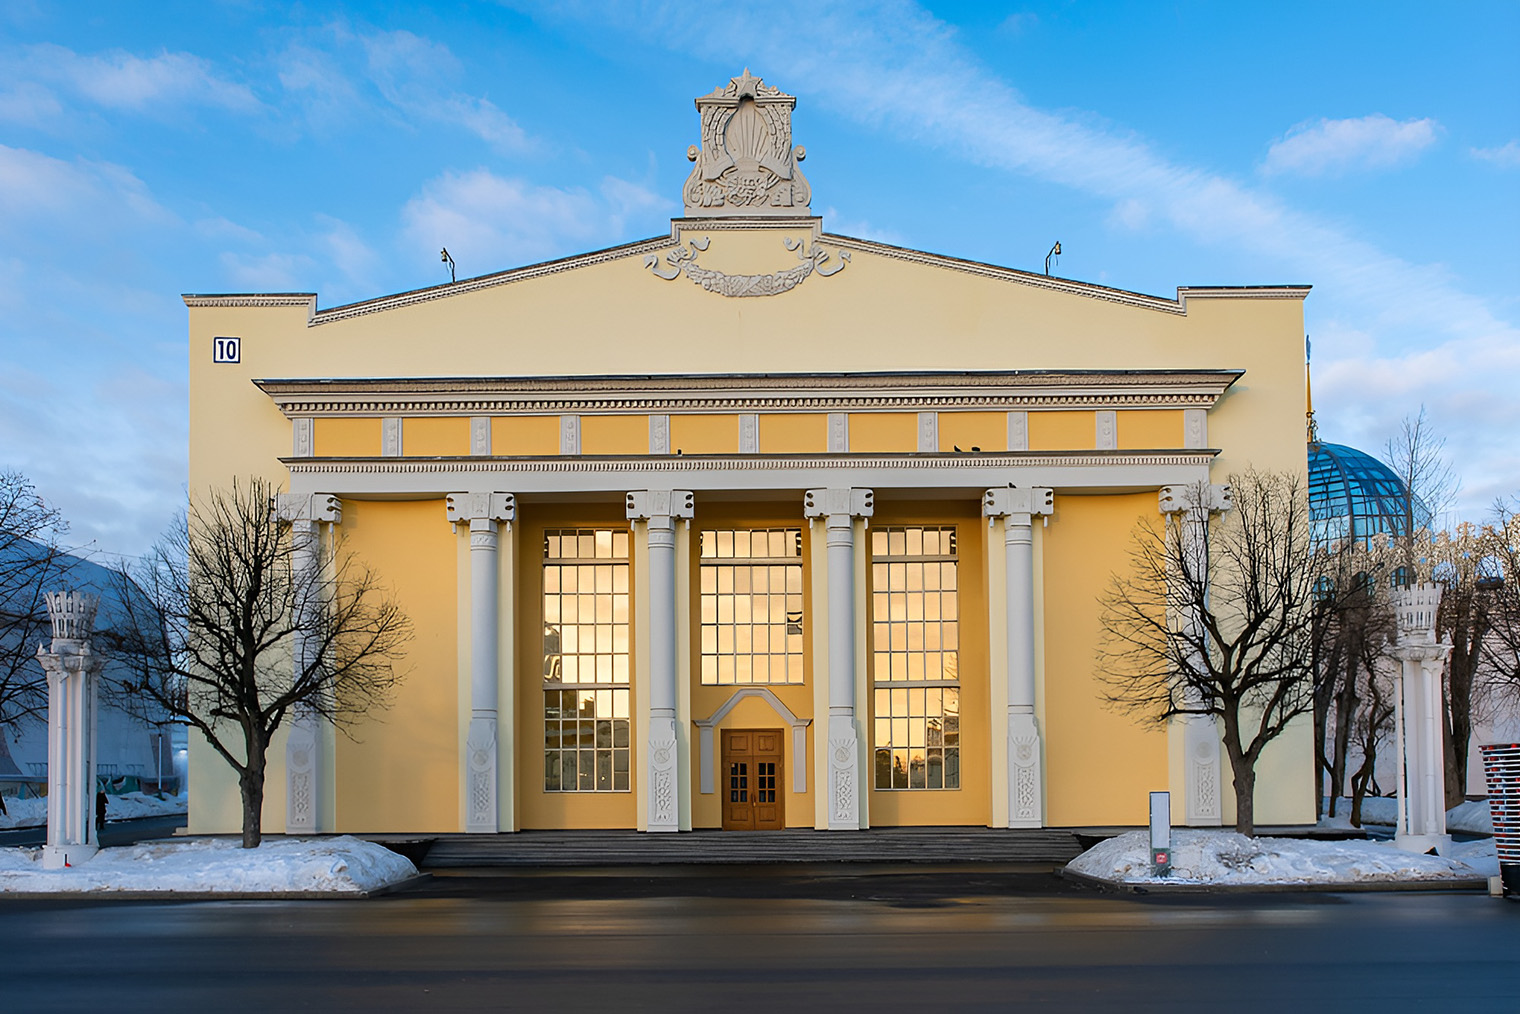 Главный фасад павильона «Молдова» украшен барельефами, на которых изображены основные отрасли сельского хозяйства, и гербом республики. Источник: vdnh.ru